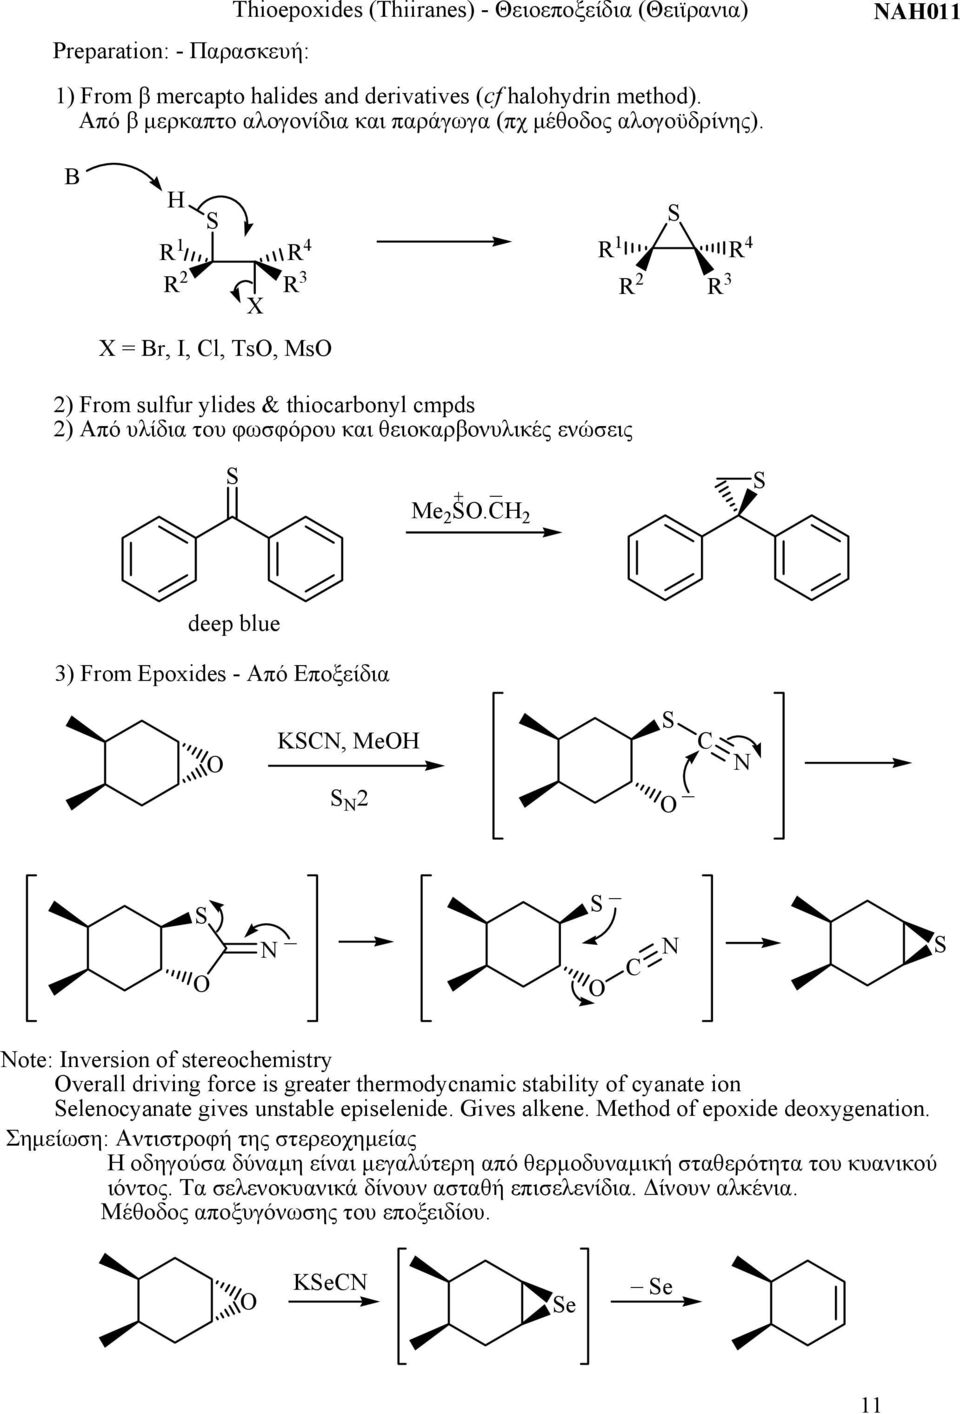 A011 B 1 4 2 X 3 X = Br, I, Cl, Ts, Ms 1 4 2 3 2) From sulfur ylides & thiocarbonyl cmpds 2) Από υλίδια του φωσφόρου και θειοκαρβονυλικές ενώσεις 2.